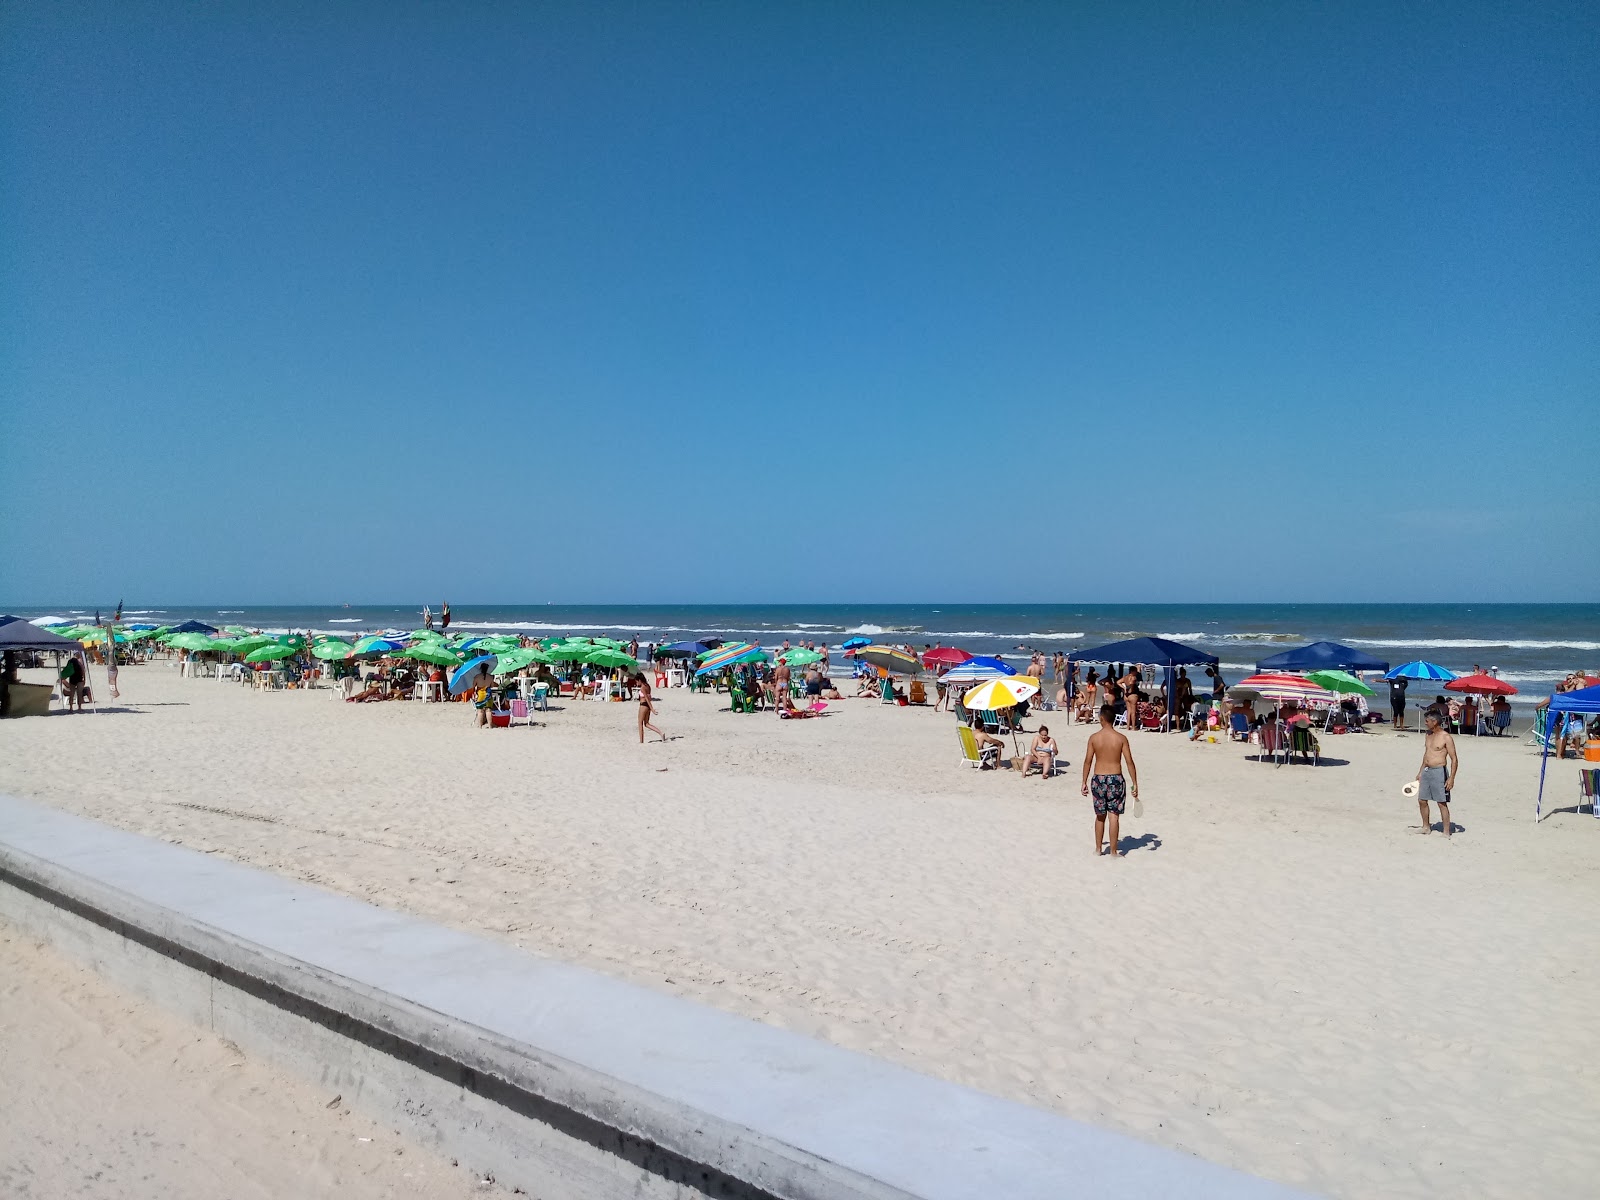 Praia de Tramandai'in fotoğrafı imkanlar alanı